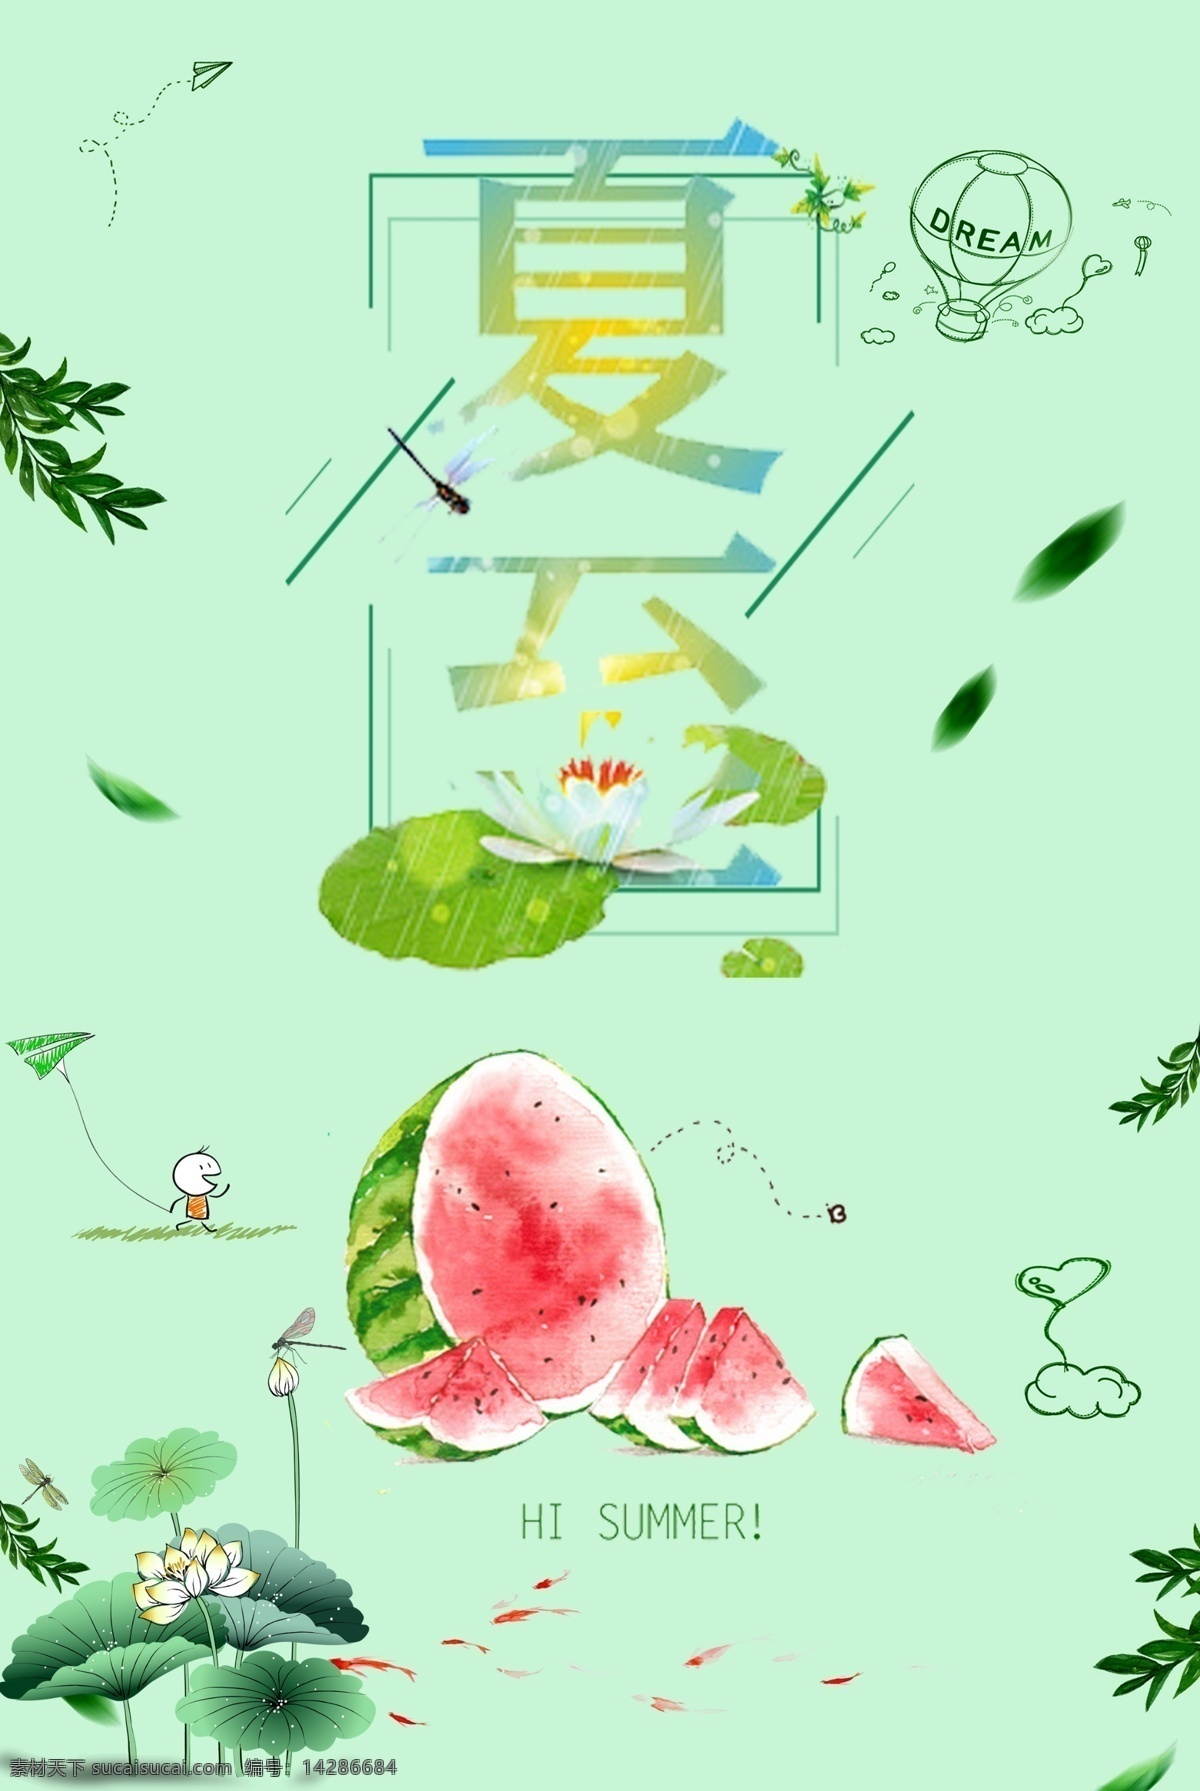 夏至 卡通 手绘 海报 展板 西瓜 荷花 荷叶 户外广告 热气球 夏天 室内写真 白莲 睡莲